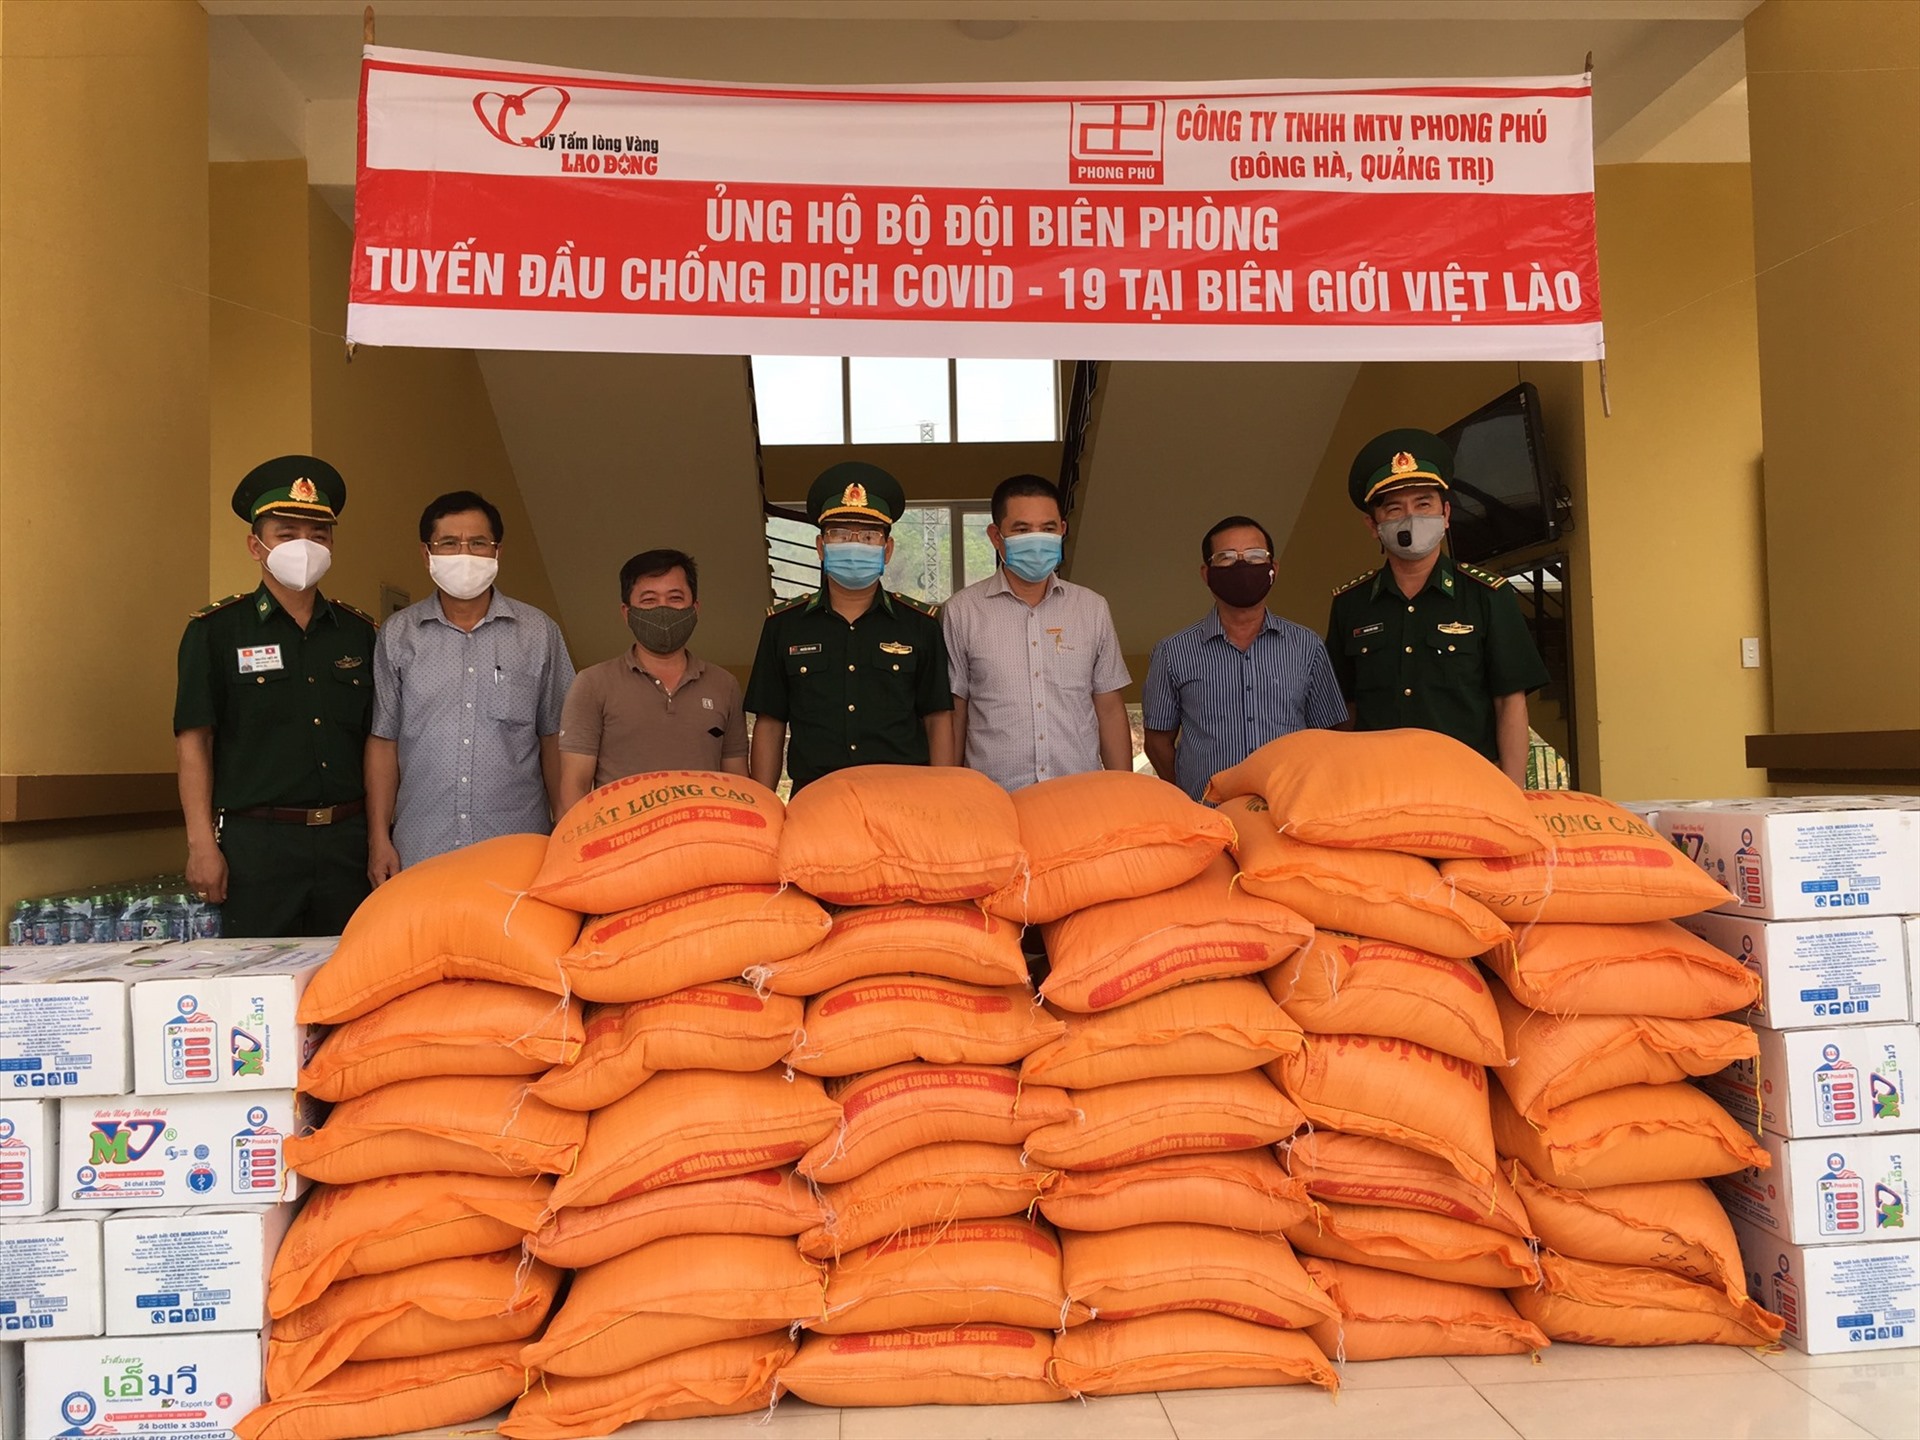 1 tấn gạo và 50 két nước lọc trị giá 15 triệu đồng được trao tận tay bộ đội chống dịch COVID - 19 tại biên giới Việt - Lào ngày 30.3.2020. Ảnh: P.V